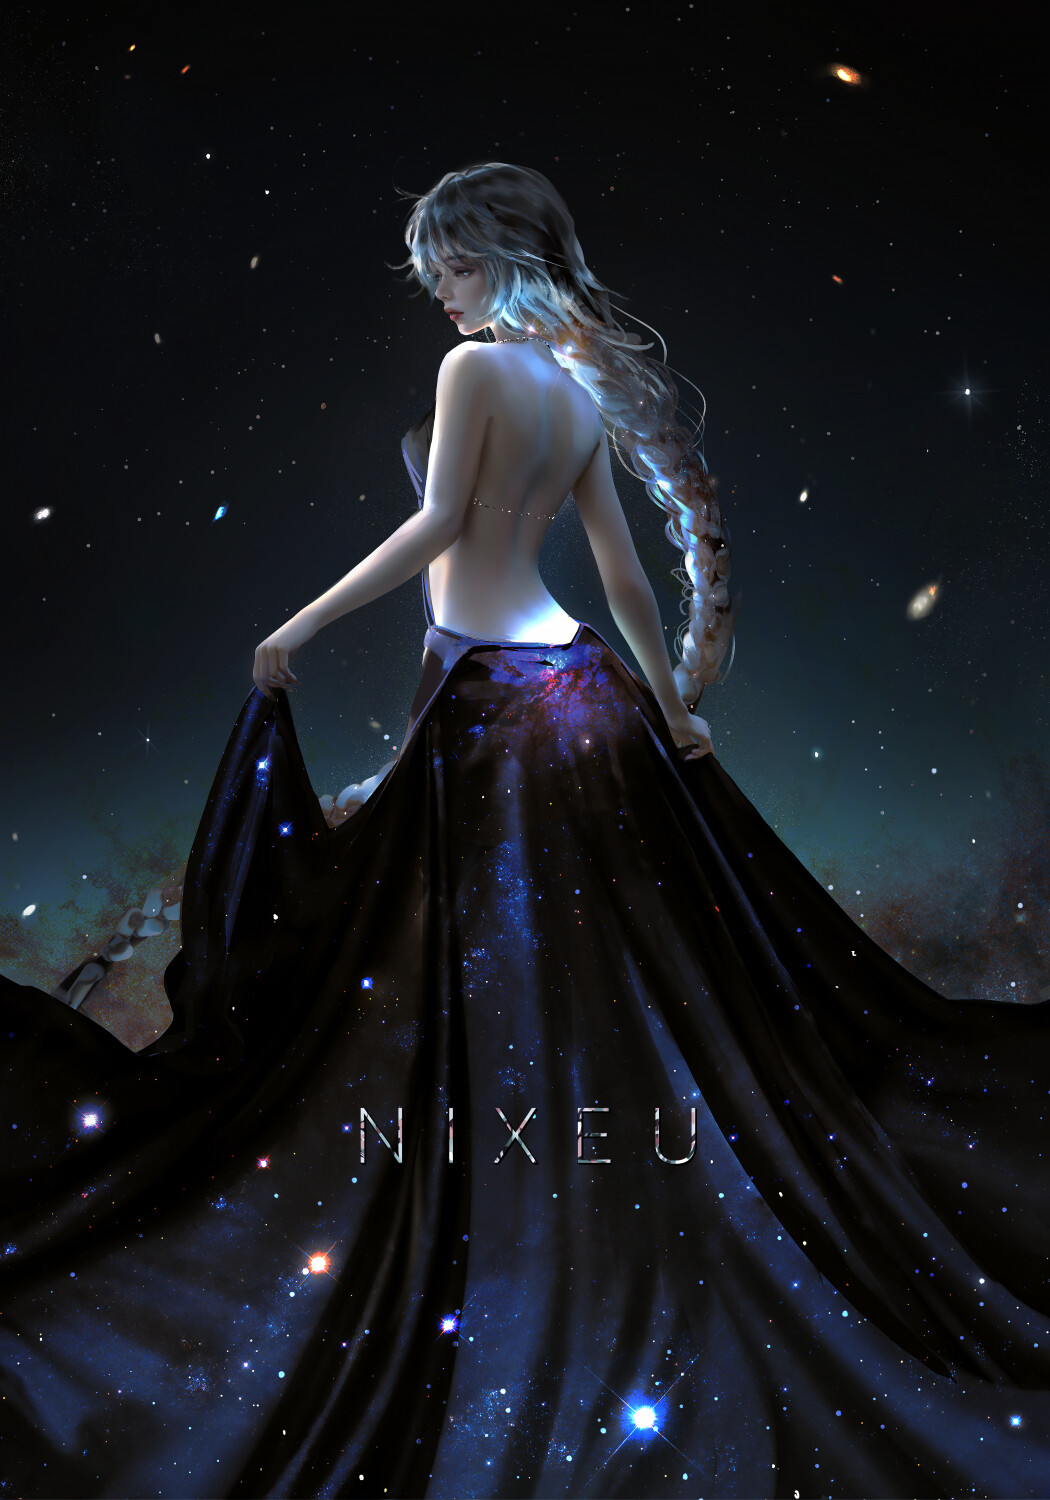 Фото Девушка в платье раскраса ночного звездного неба с оголенной спиной